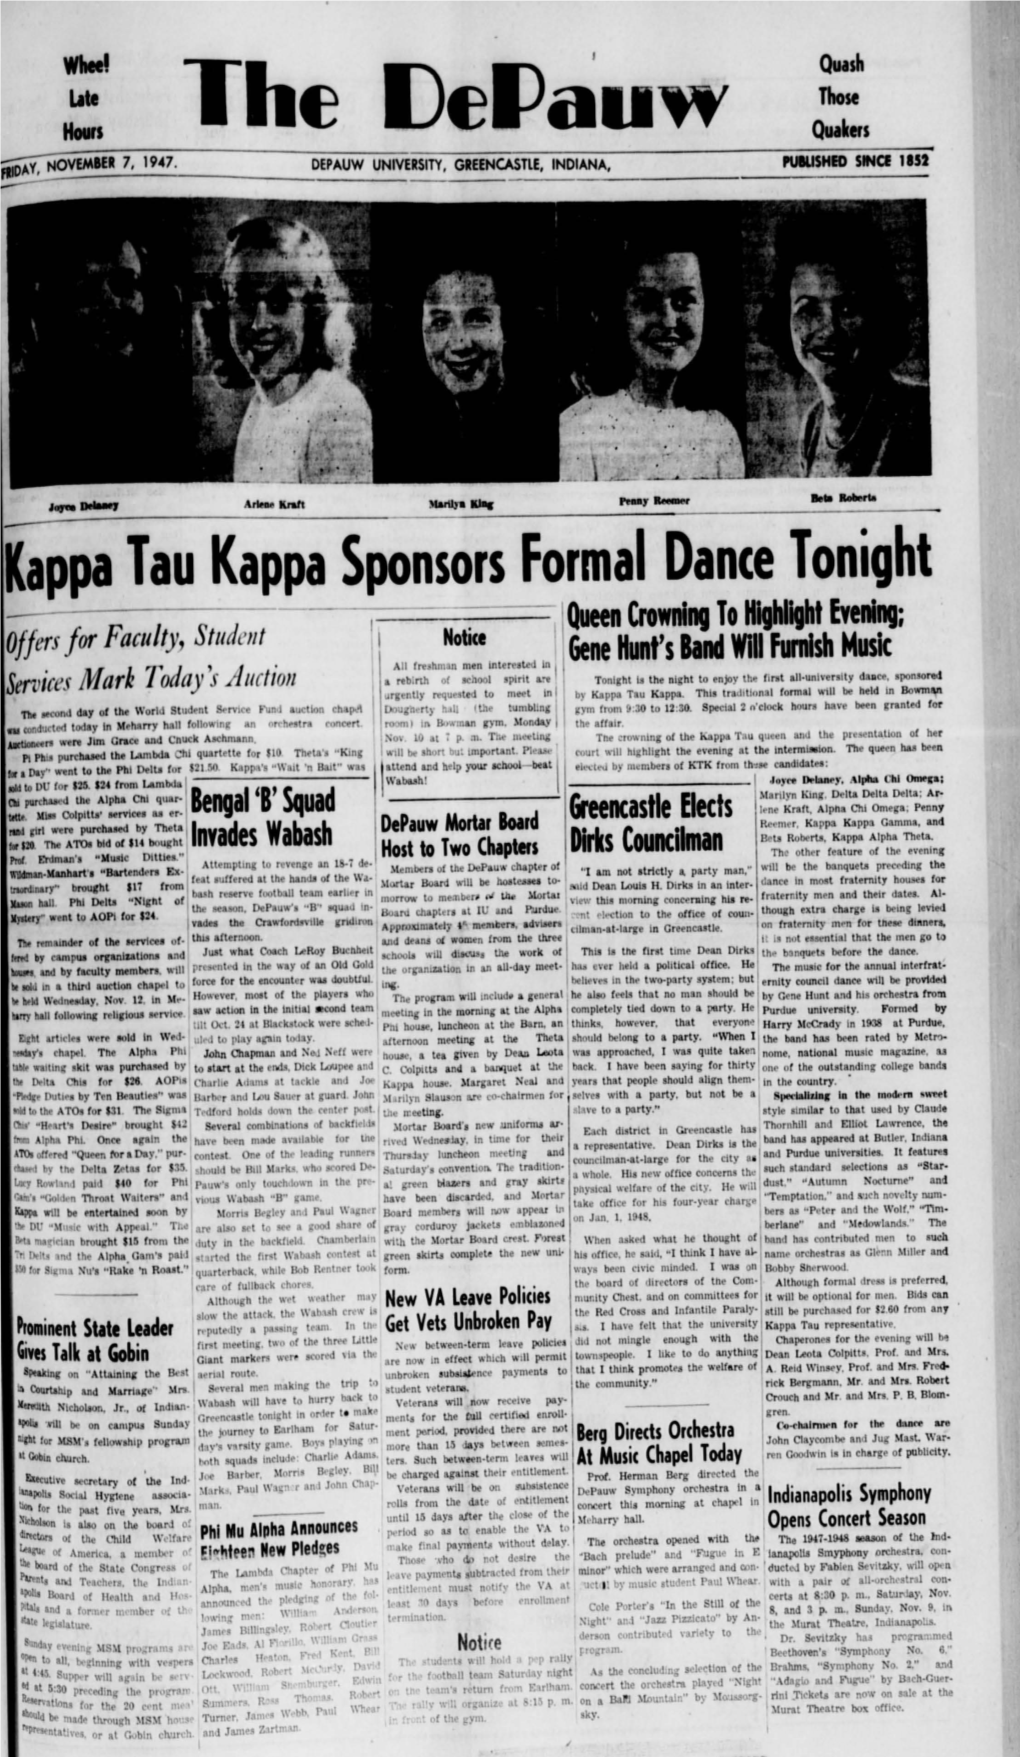 Kappa Tau Kappa Sponsors Formal Dance Tonight